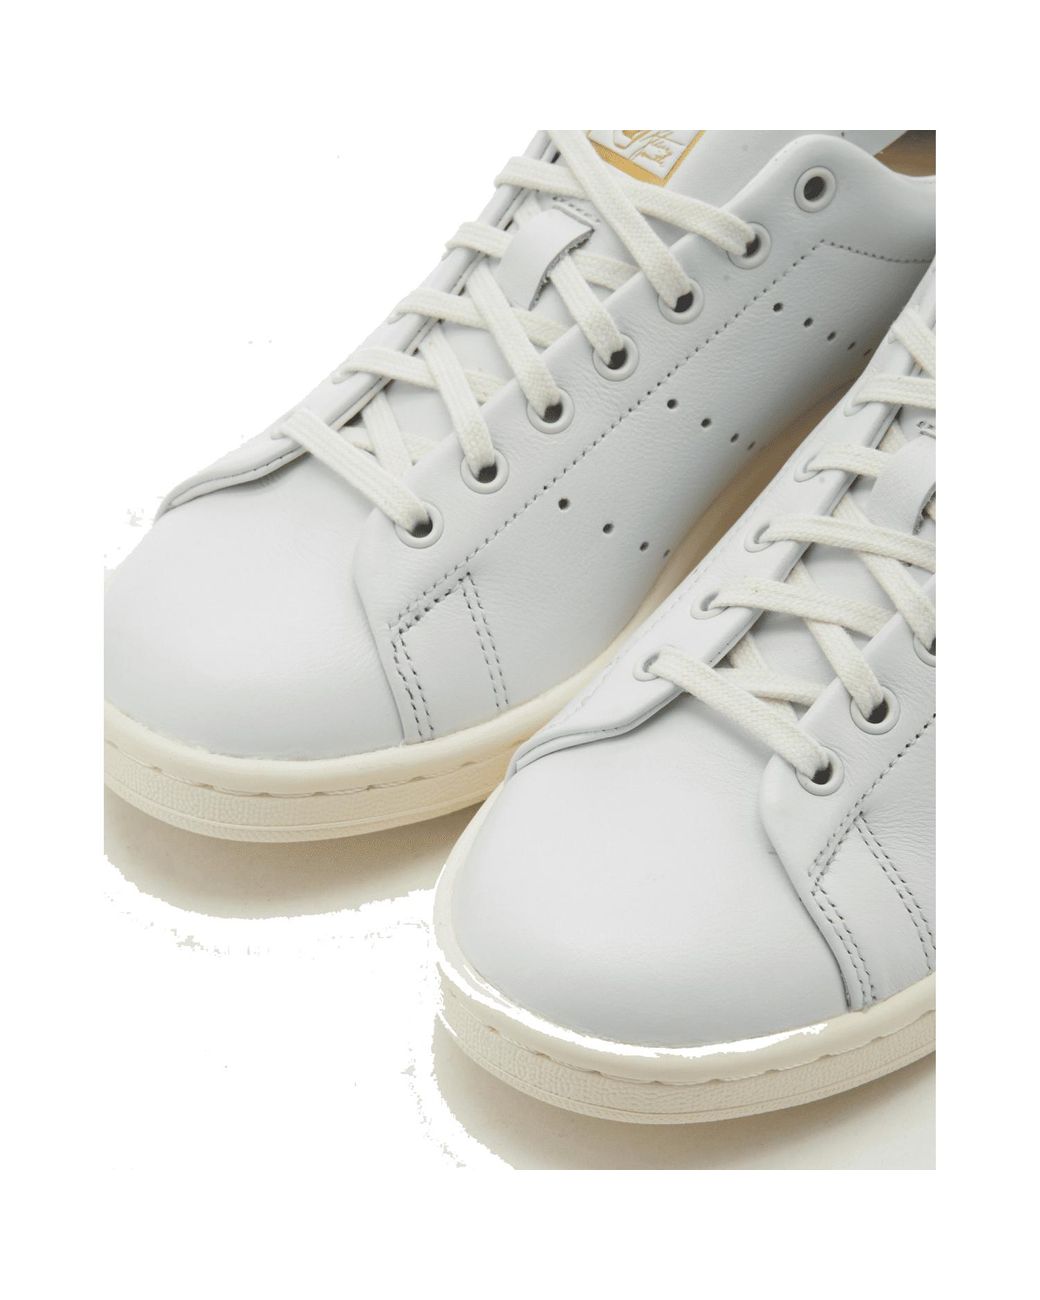 Men's shoes adidas Stan Smith Core White/ Off White/ Pantone